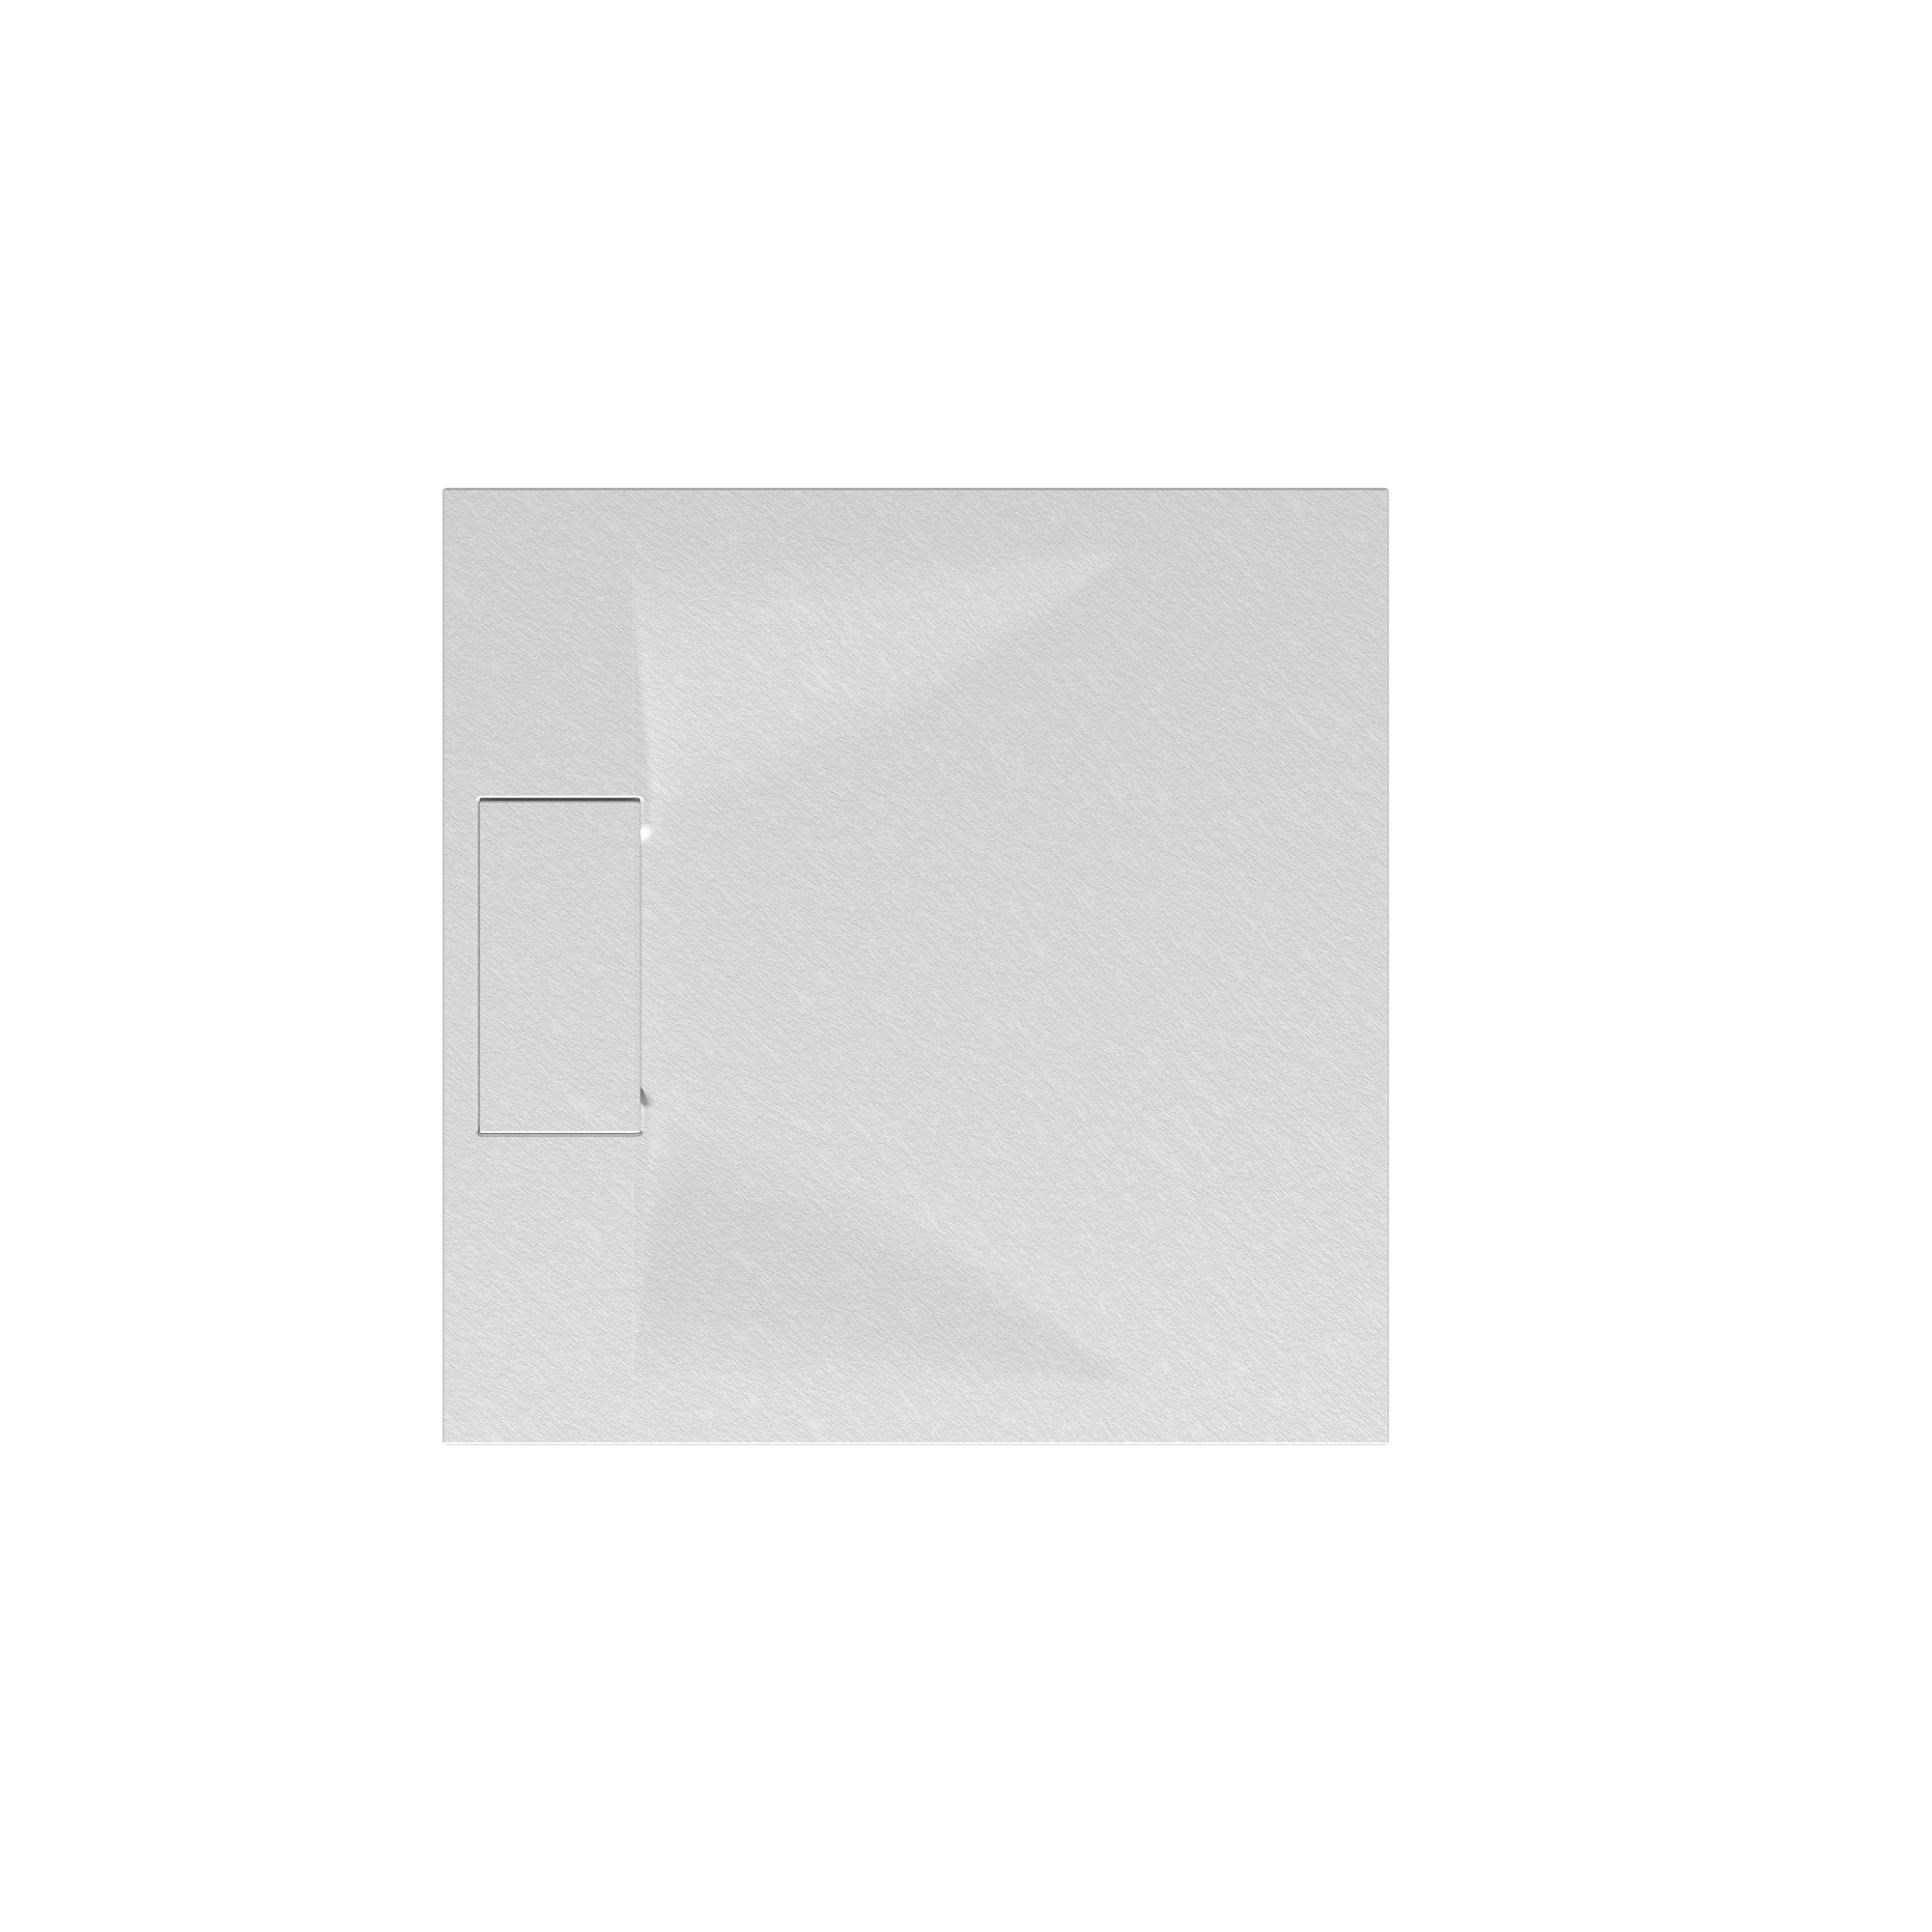 Duschwanne 'Lite Line/Quick72' Steinoptik weiß 90 x 90 cm + product picture